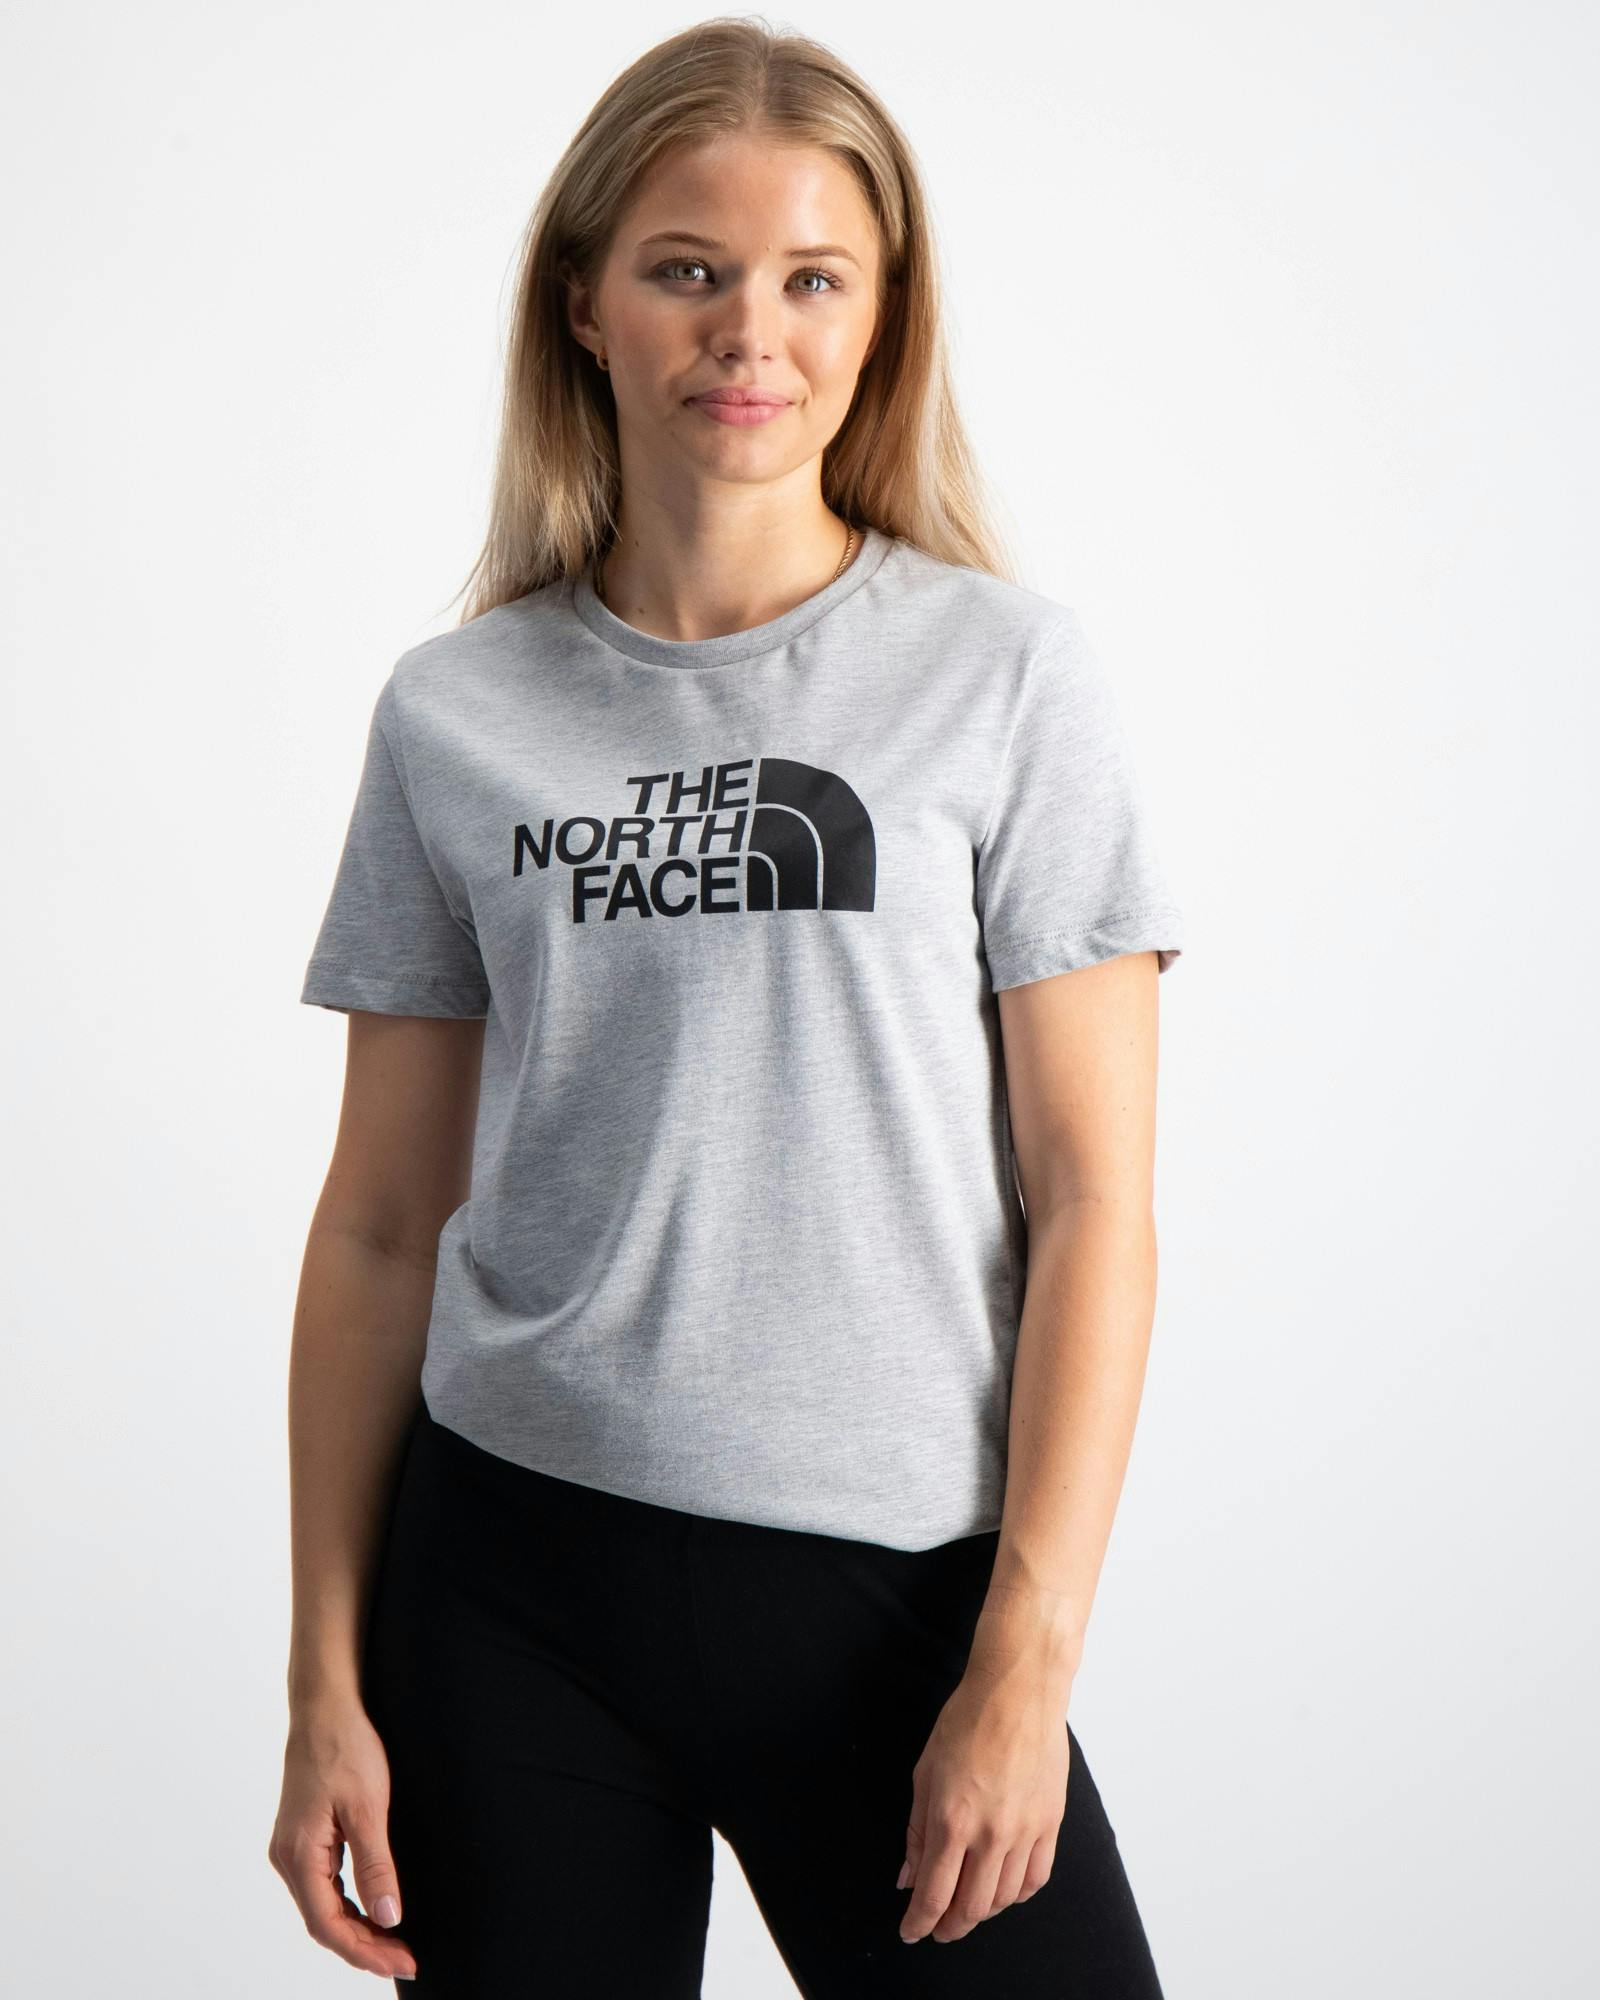 Kinder North | T-Shirts Brand Kids für Face The Jugendliche Store und